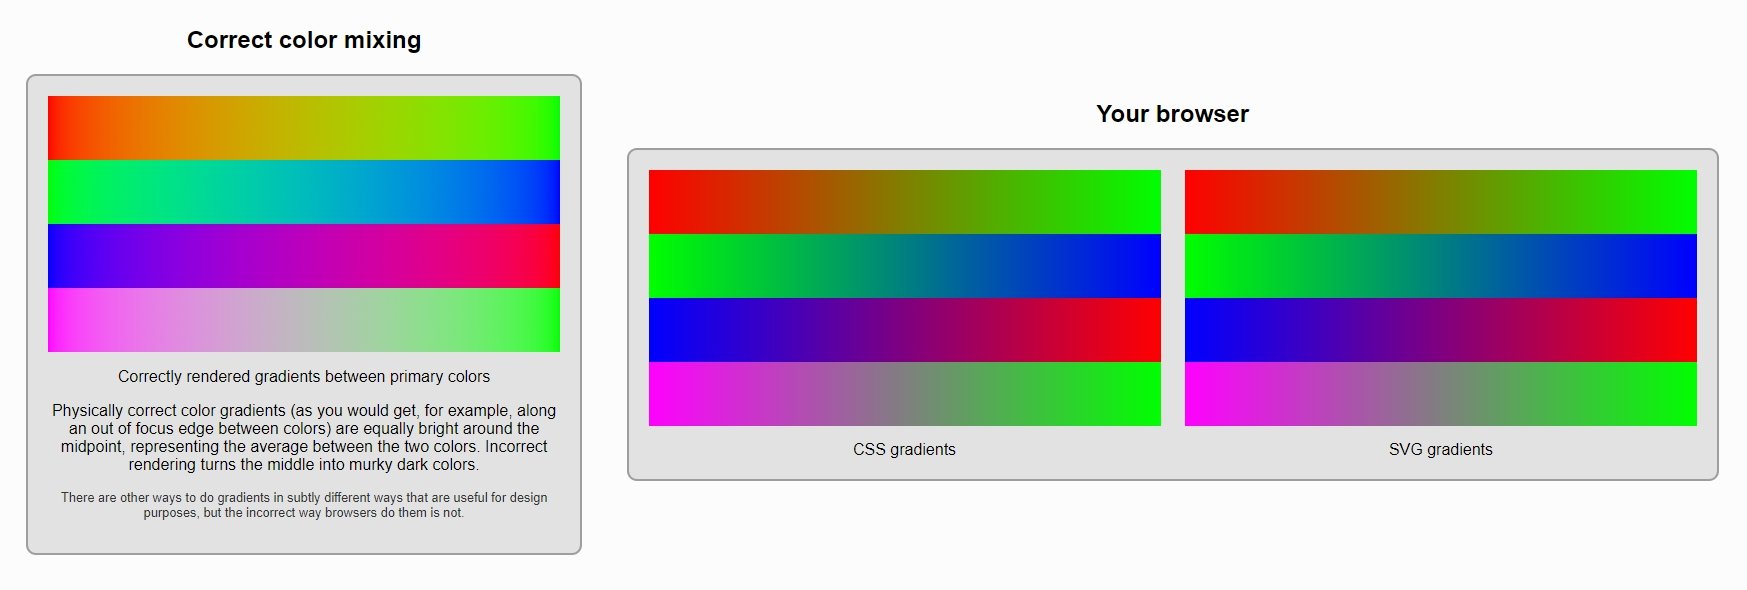 cores no navegador vs realidade